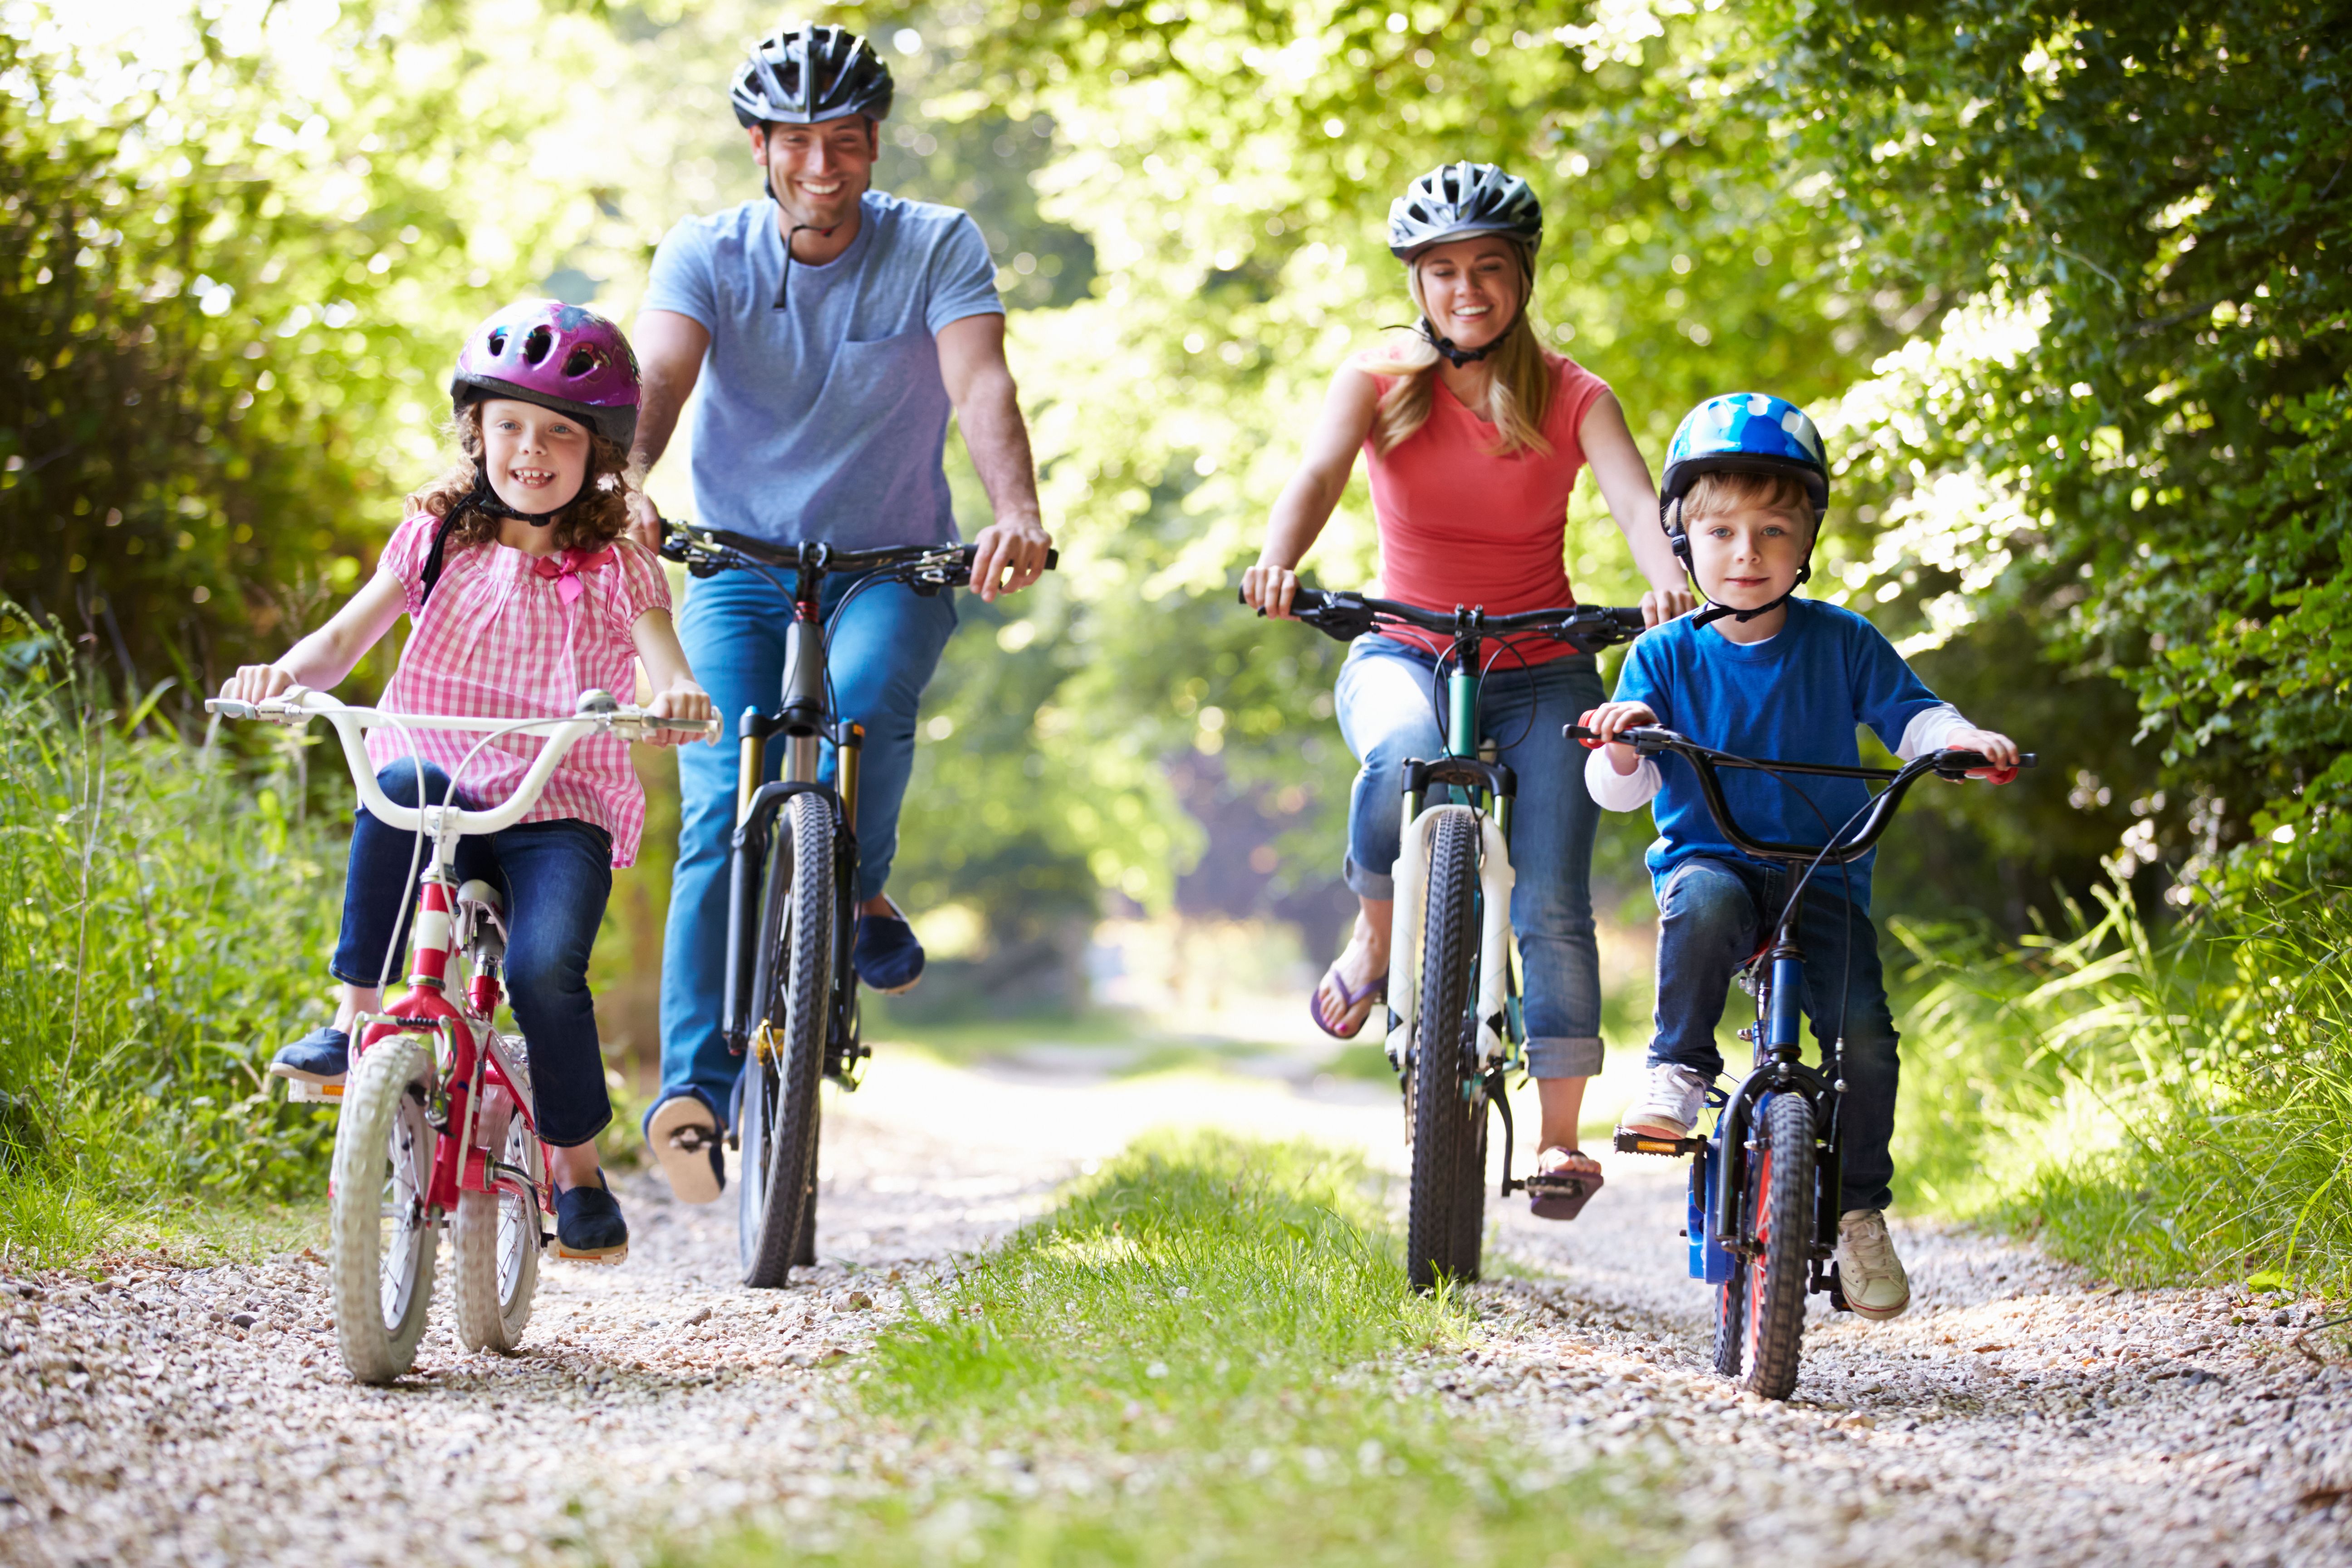 7. Family fun bike ride